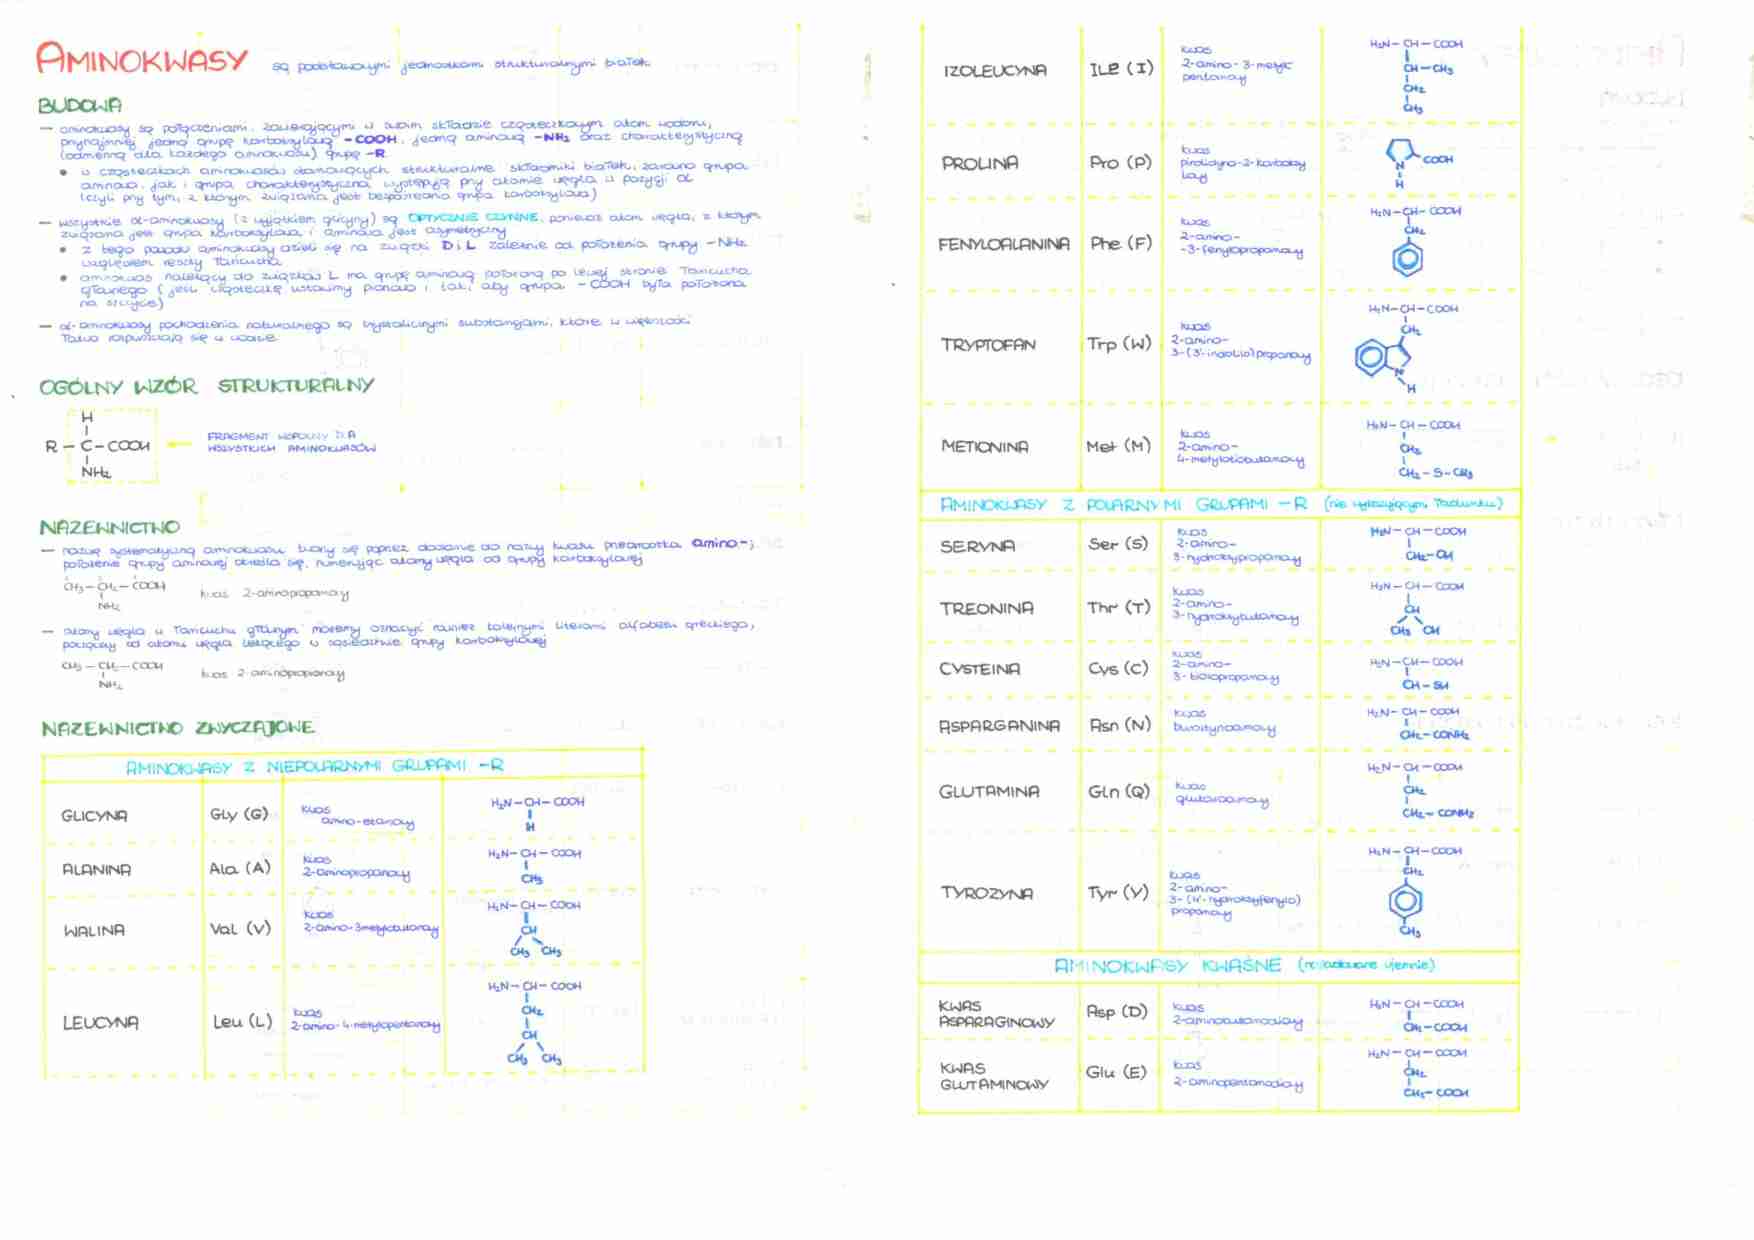 Biochemia - aminokwasy, peptydy i białka - strona 1